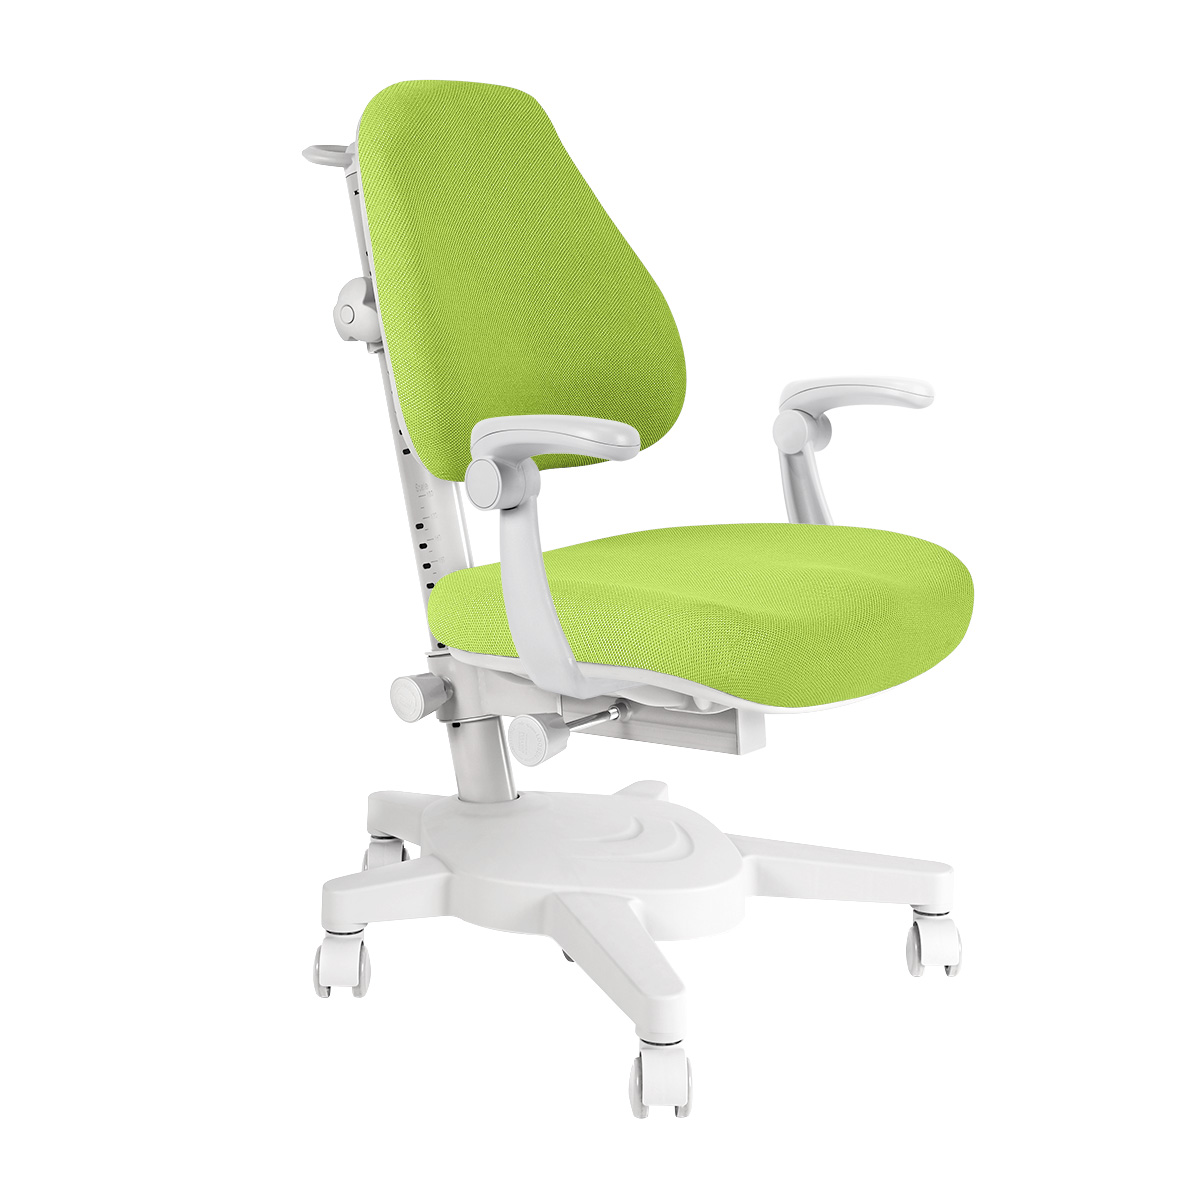 Детское кресло Anatomica Armata с подлокотниками цвет зеленый кресло бильярдное weekend мягкое сиденье мягкая спинка 40 600 50 8 зеленый